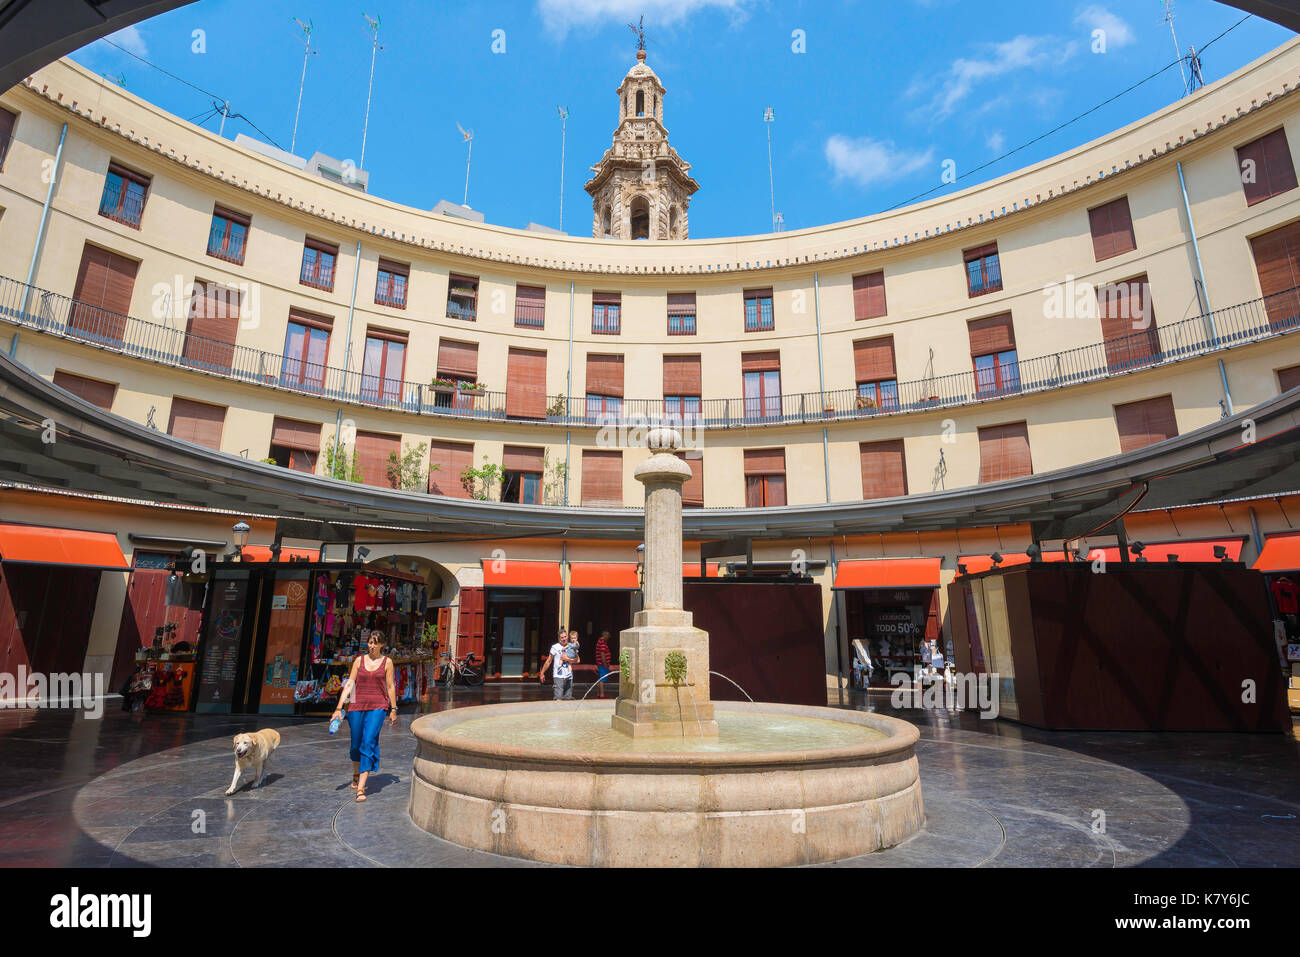 Al di sotto della santa catalina tower,la forma circolare plaza redonda nel cuore della città vecchia di Valencia è stato precedentemente noto come la città del mercato del pesce. Foto Stock